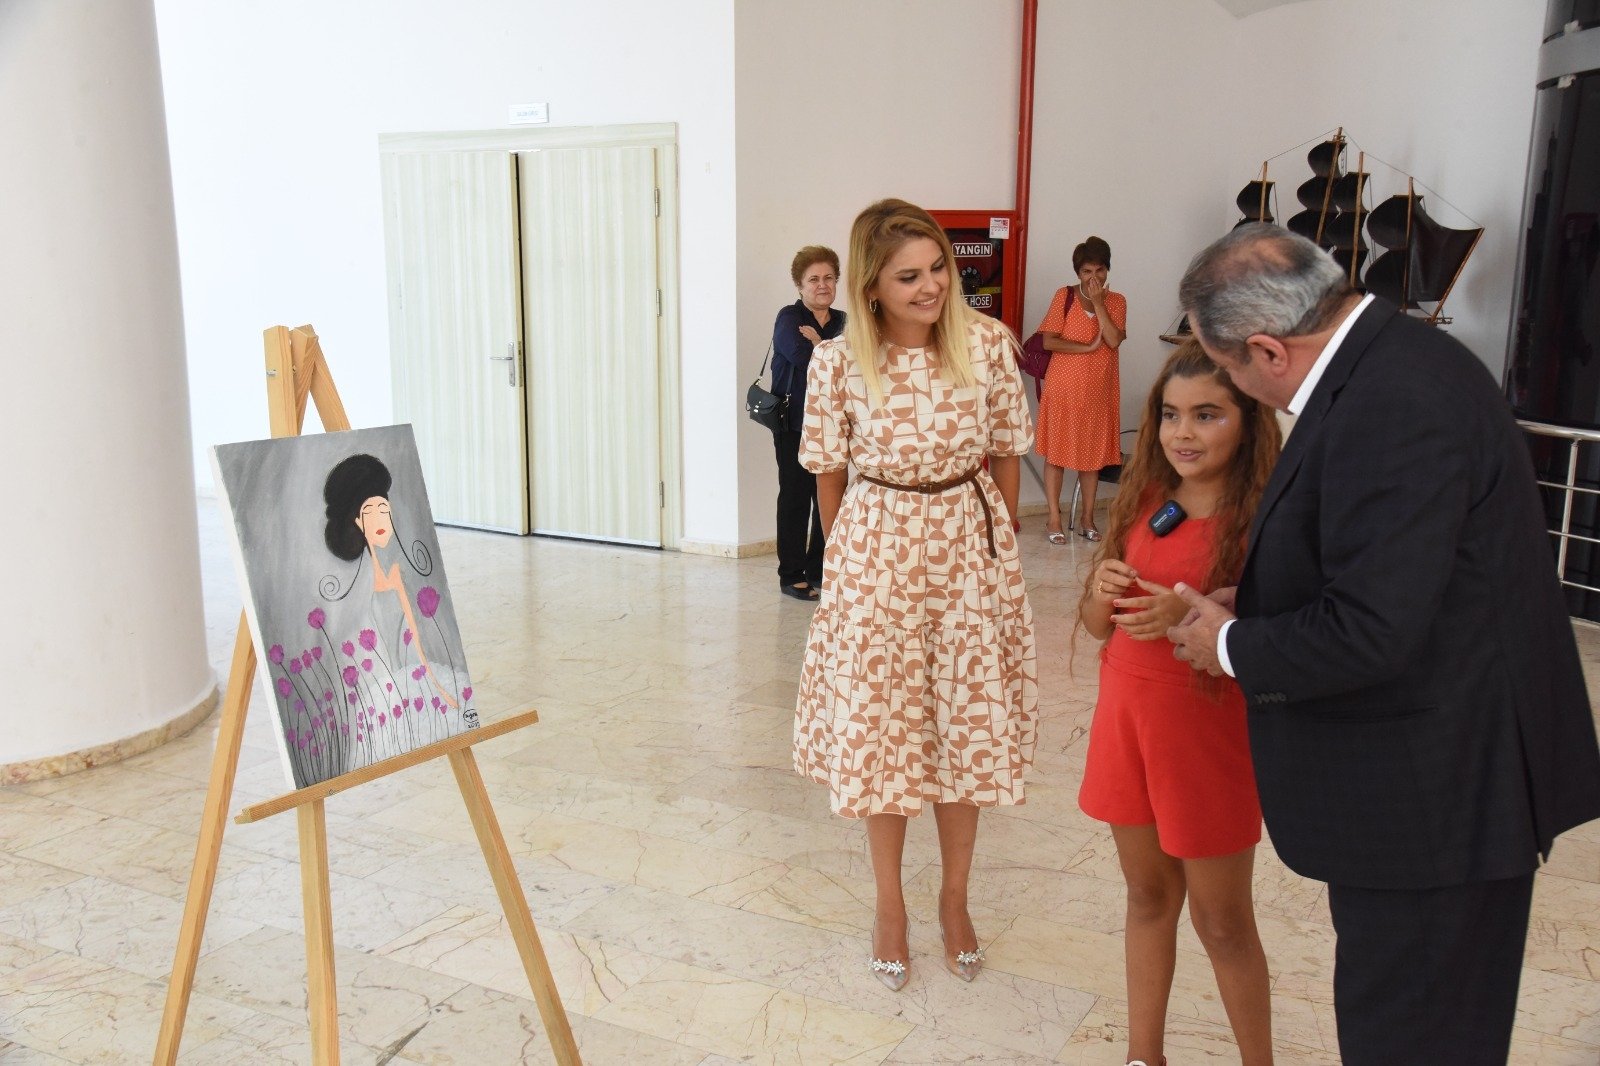 Seniman delapan tahun Zeynep Yağmur evik menghadiri pameran lukisannya di Bilecik, Turki.  (Foto AA)